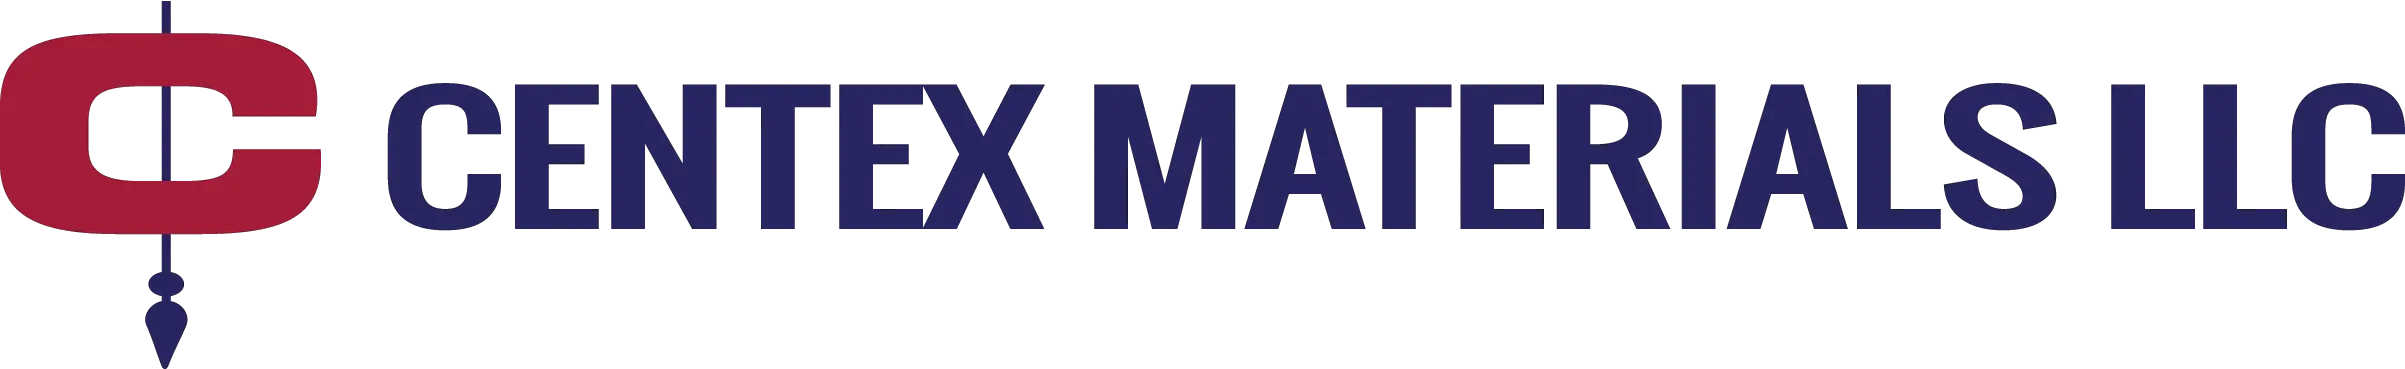 Business logo of Centex Materials LLC